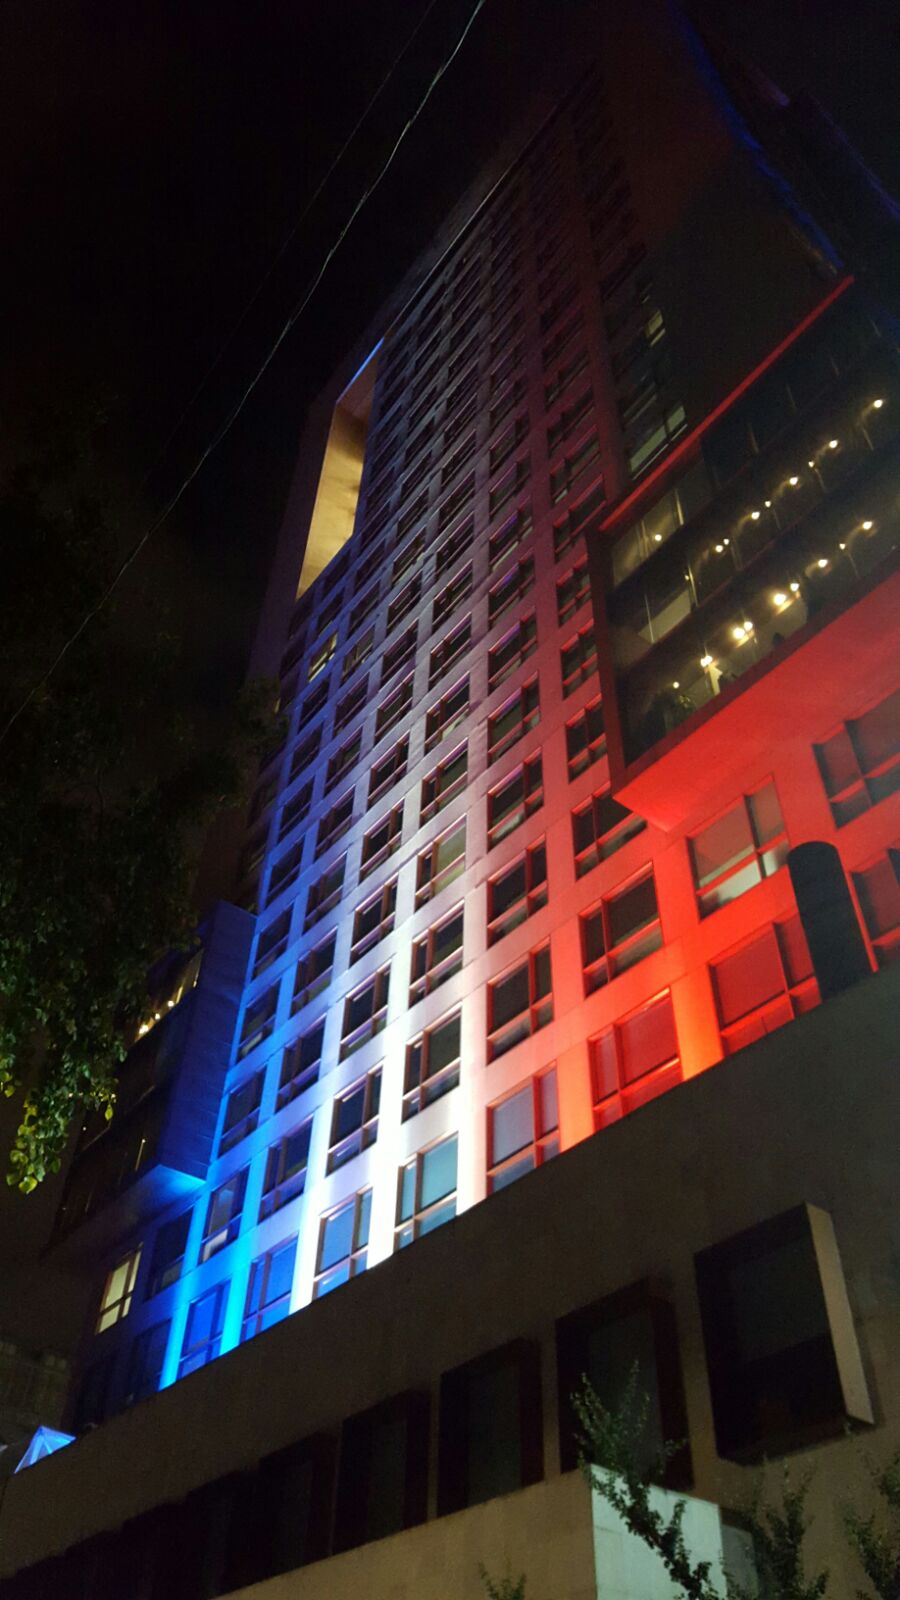 FOTO 2 Edificio de la Canciller a iluminado con los colores de Franciajpg